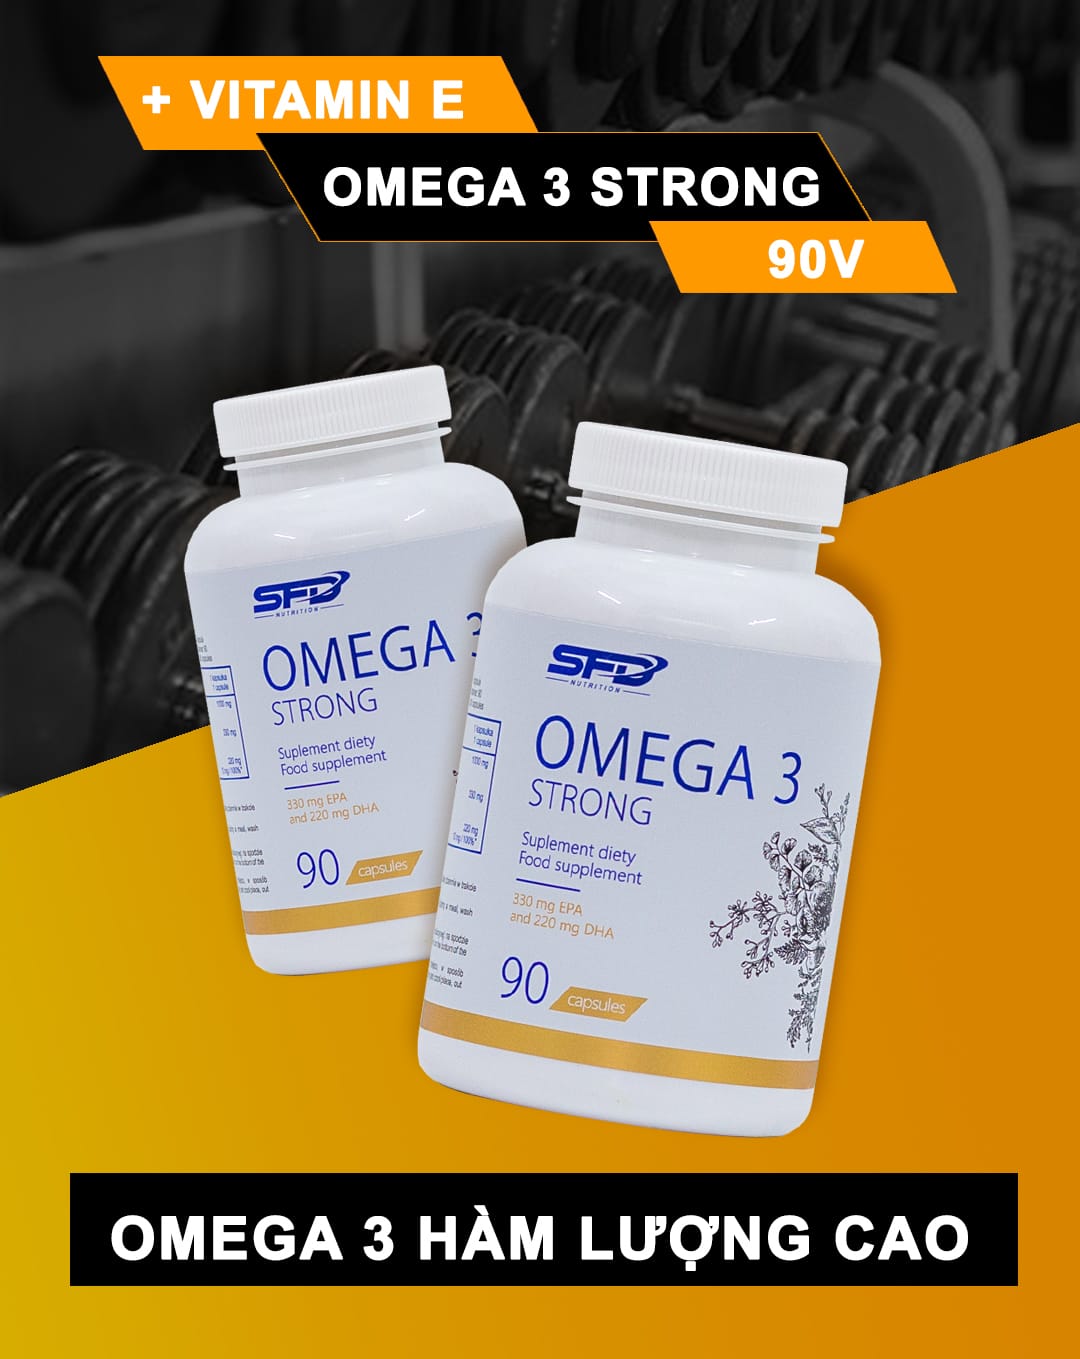 SFD - Omega 3 Strong (90 viên) - omega 3 1